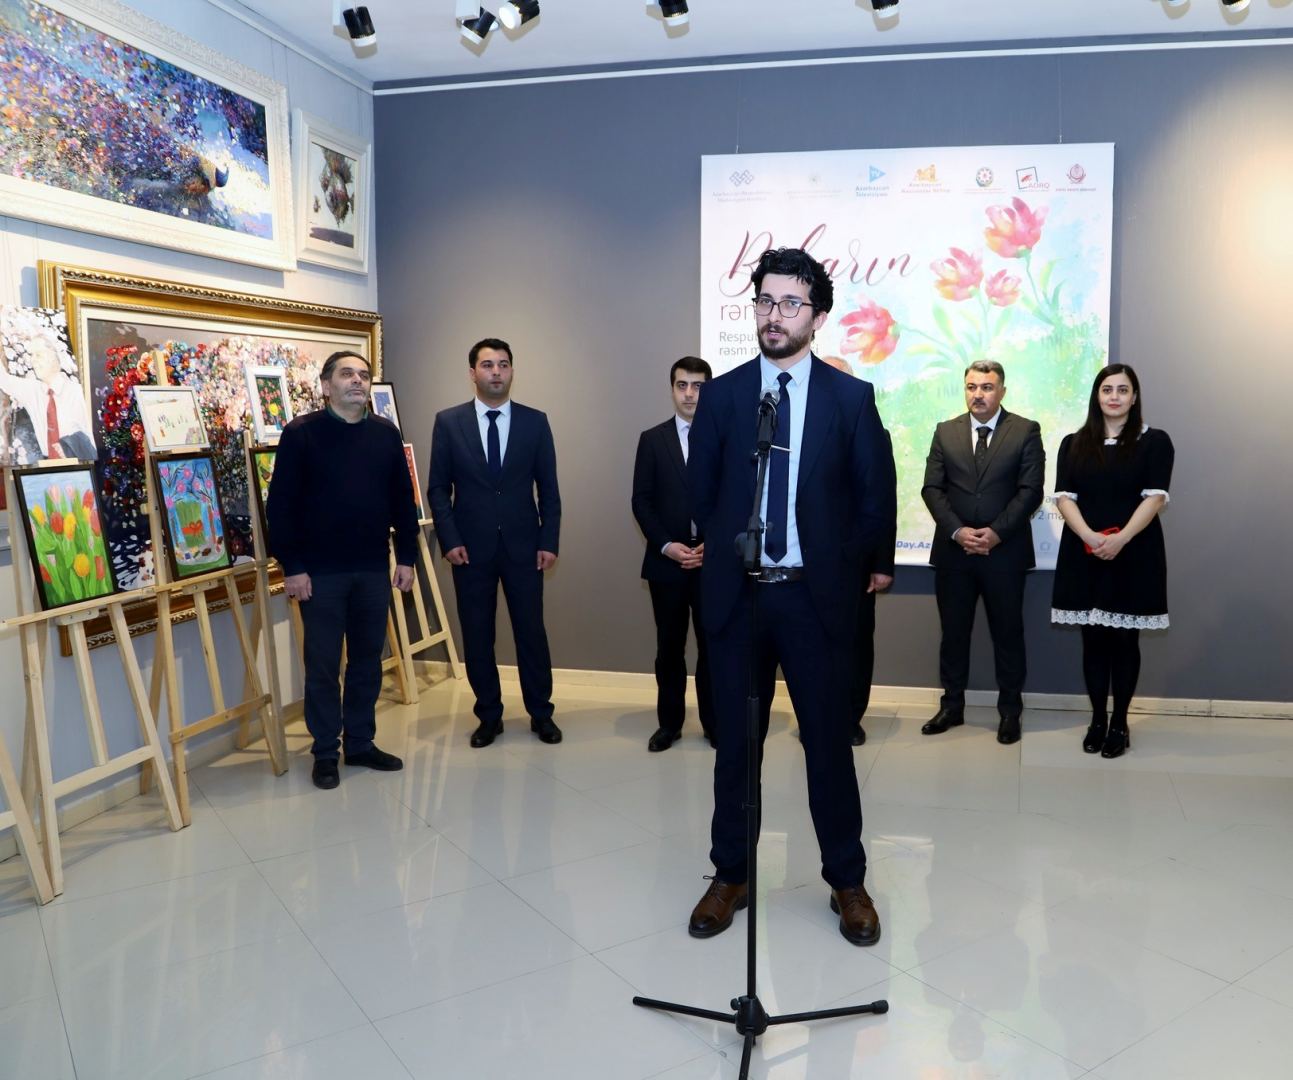 Насыщенные краски и хорошее настроение – весенняя выставка в Баку (ФОТО)